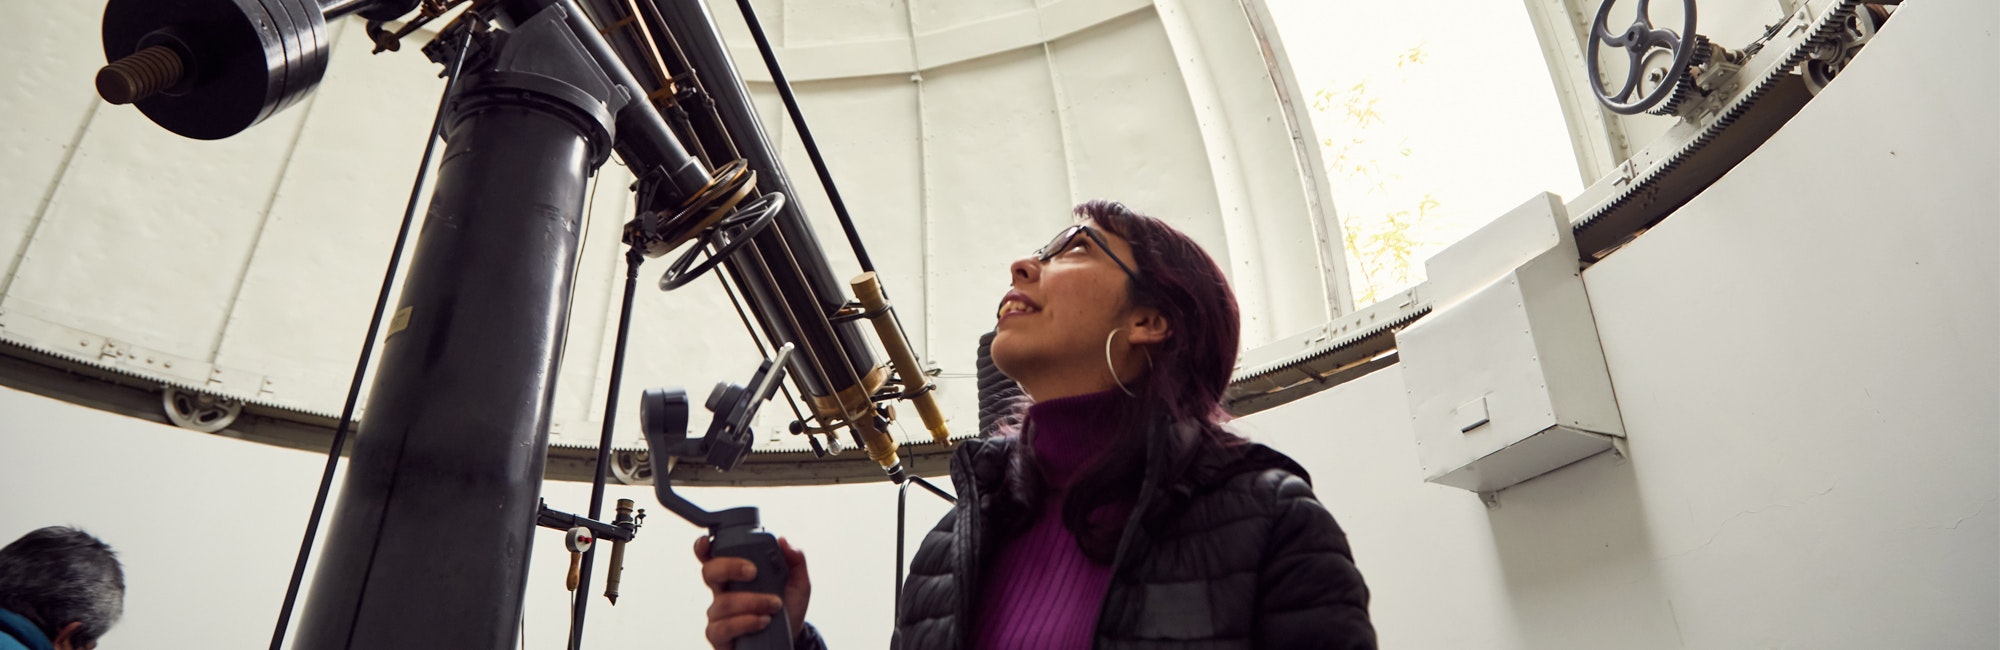 امرأة تنظر إلى الأعلى وتحمل التلسكوب الضخم